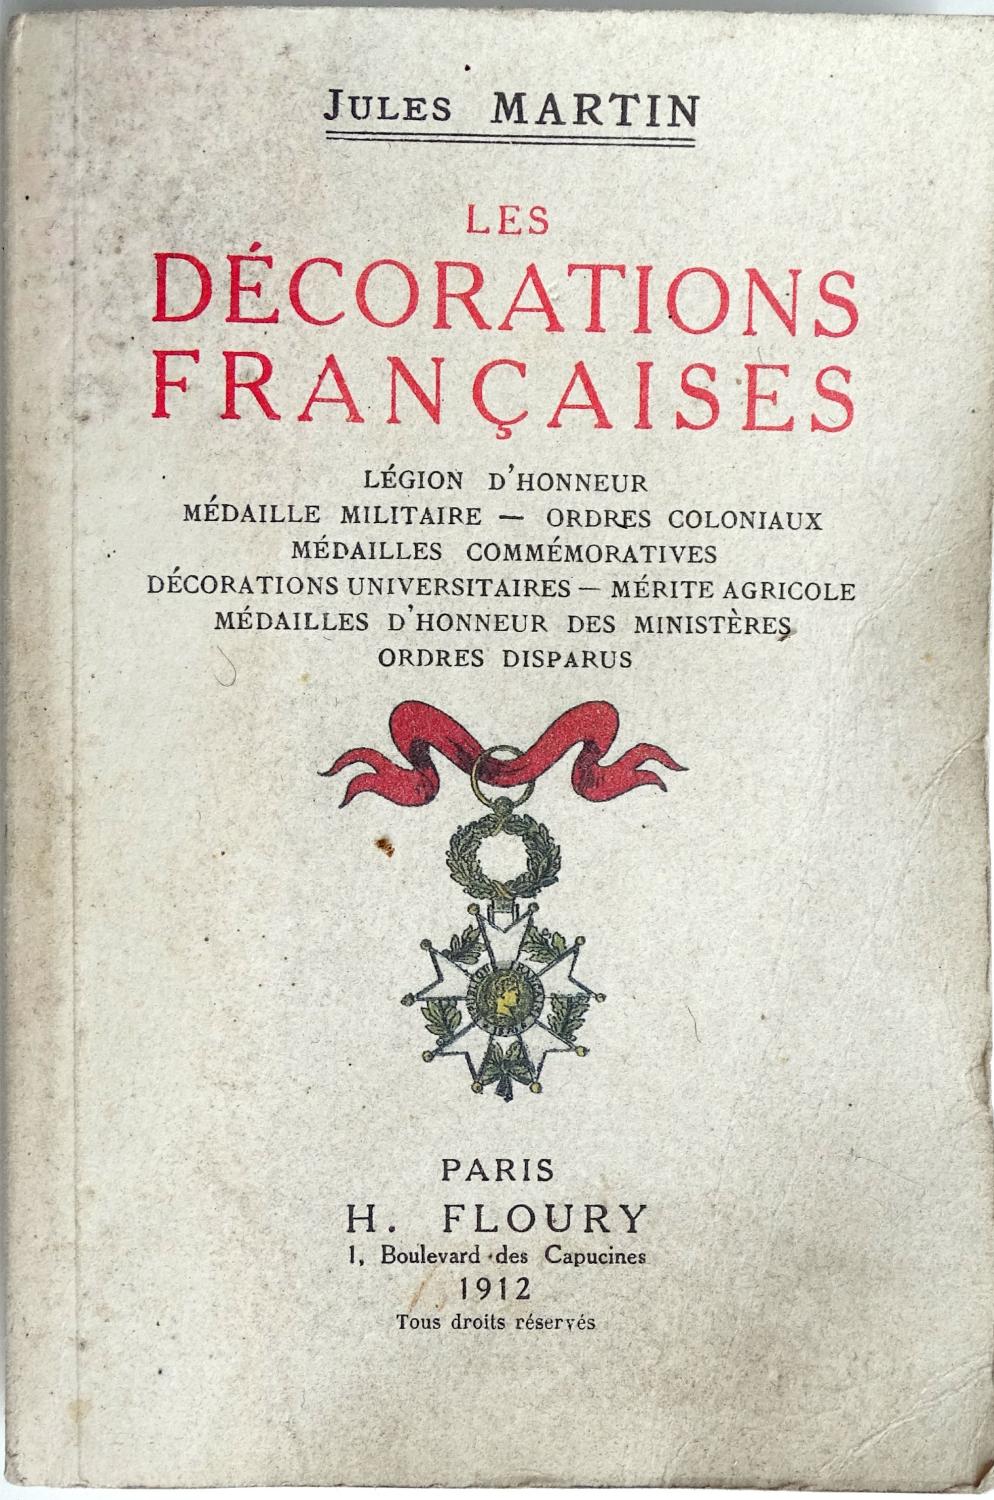 Les d&eacute;corations fran&ccedil;aises Jules Martin 1912, r&eacute;edition 1996